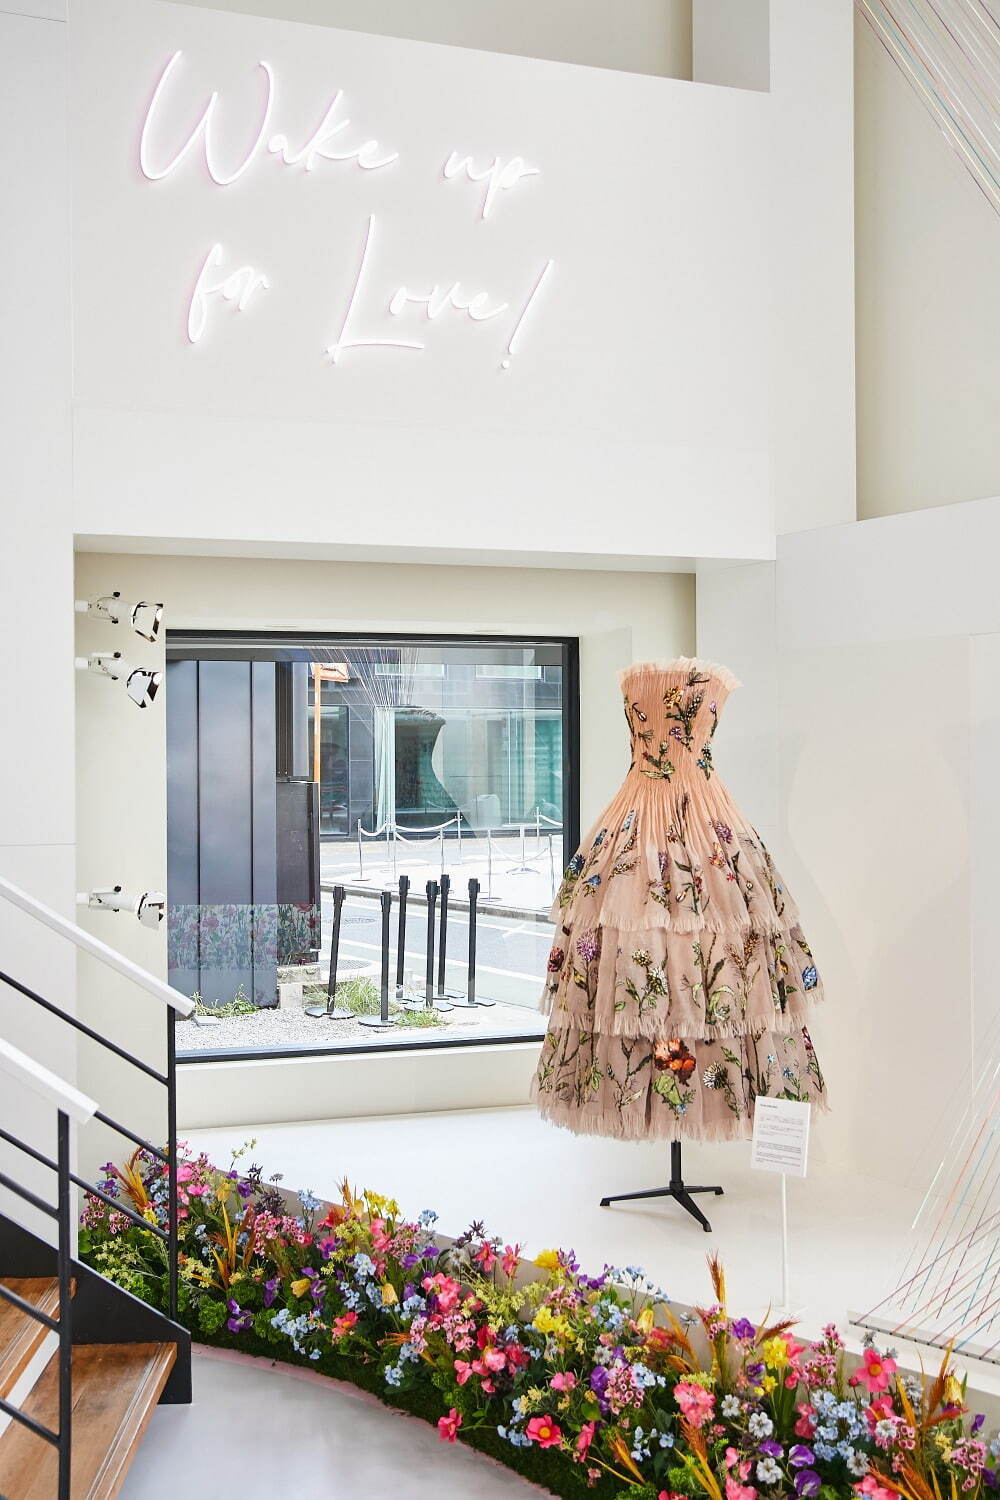 マリア・グラツィア・キウリによるミス ディオール ドレスの展示